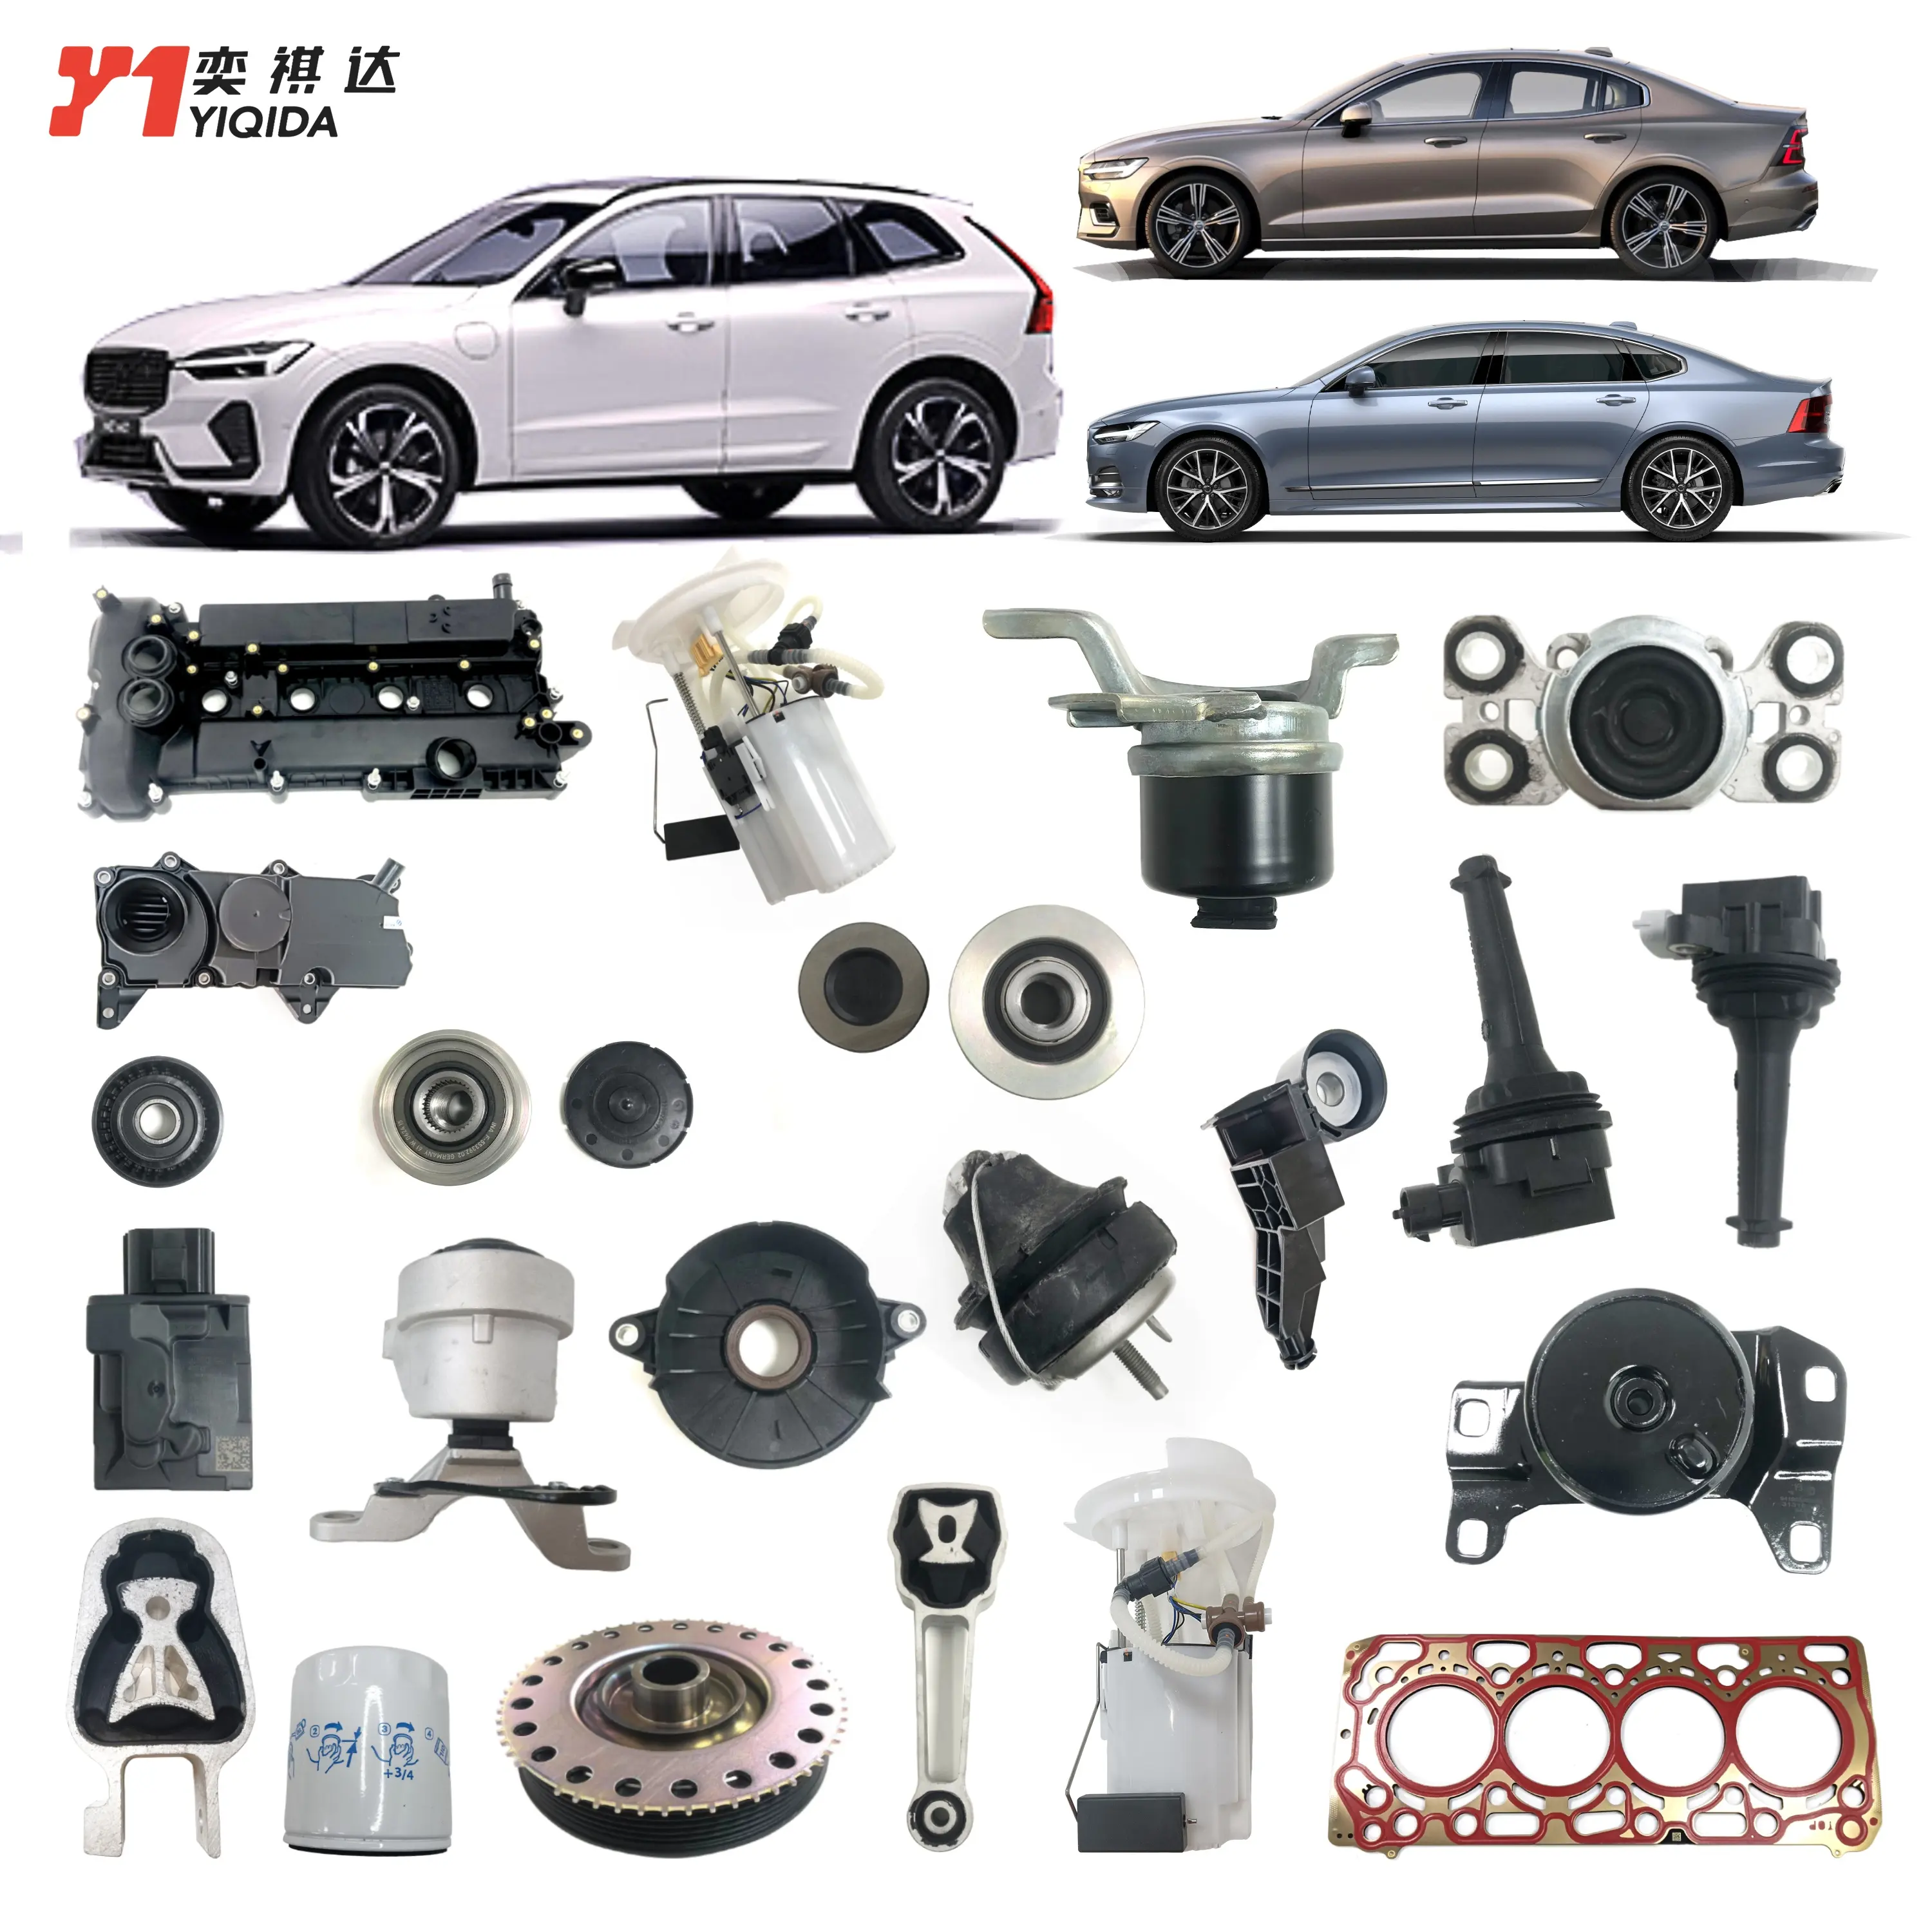 Yiqida Oem Groothandel Guangzhou Auto Motor Systemen Auto Onderdelen Auto Andere Motor Onderdelen Voor Volvo Xc60 Xc90 S80 S60 V60